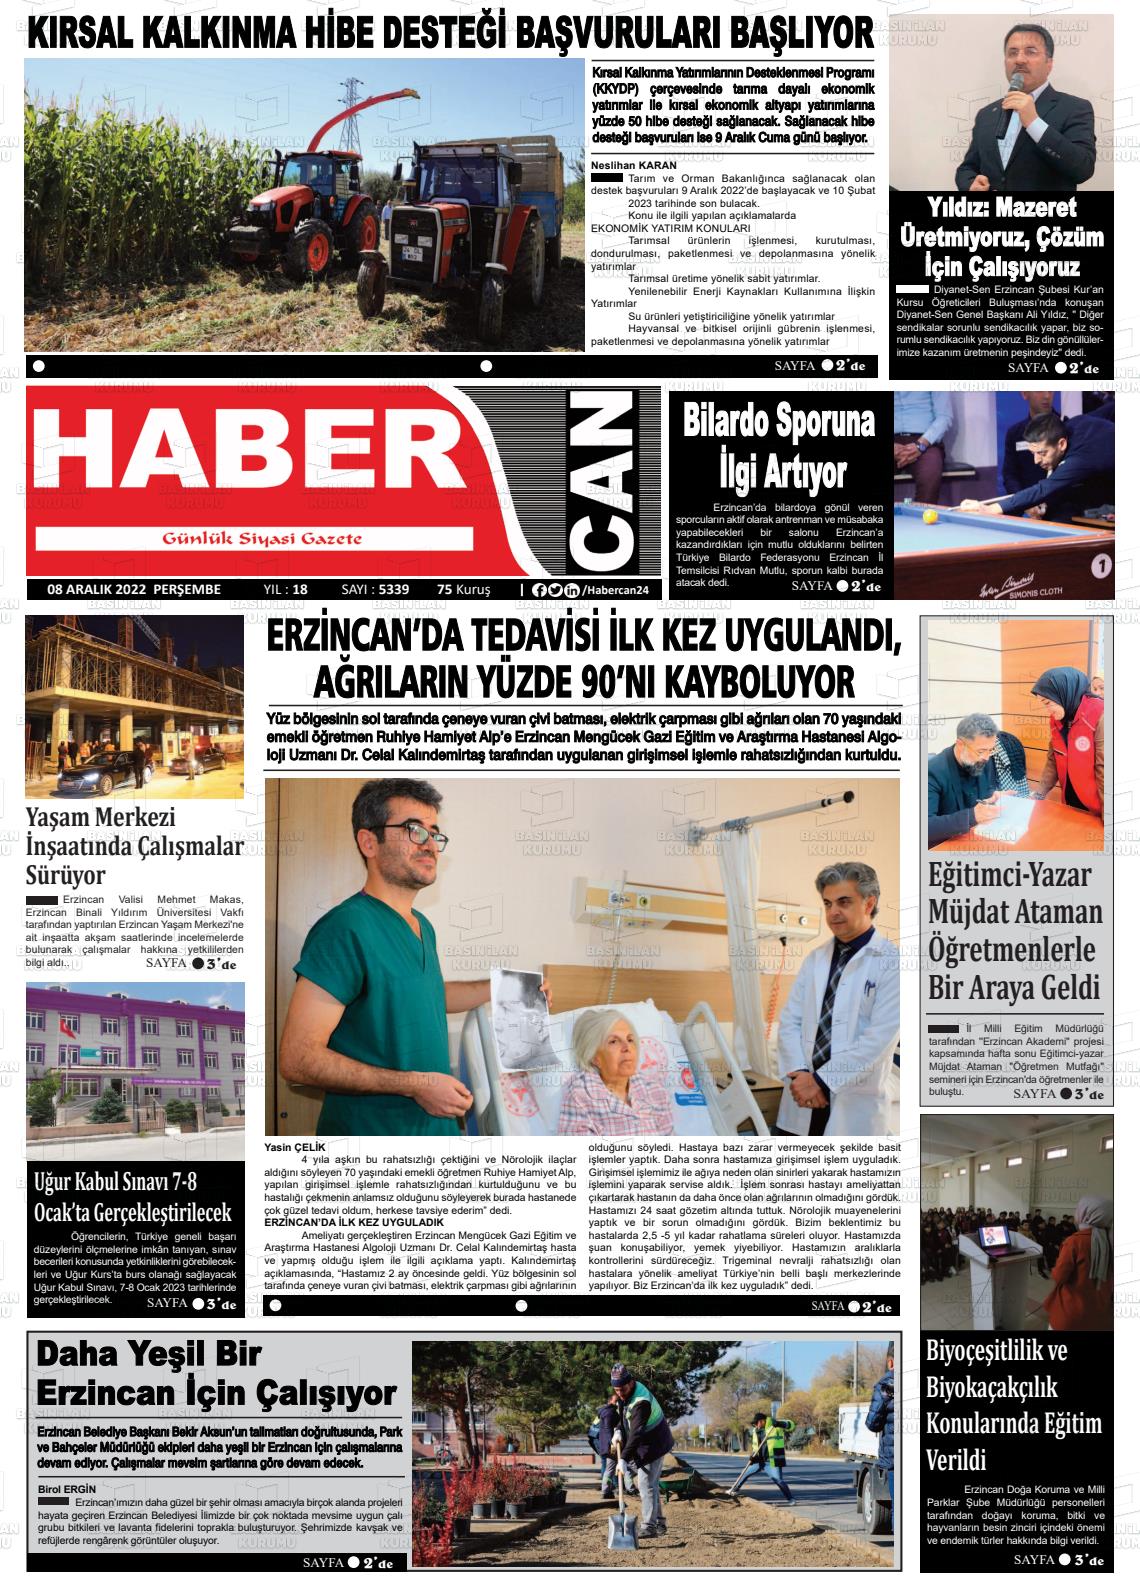 08 Aralık 2022 Erzincan Habercan Gazete Manşeti